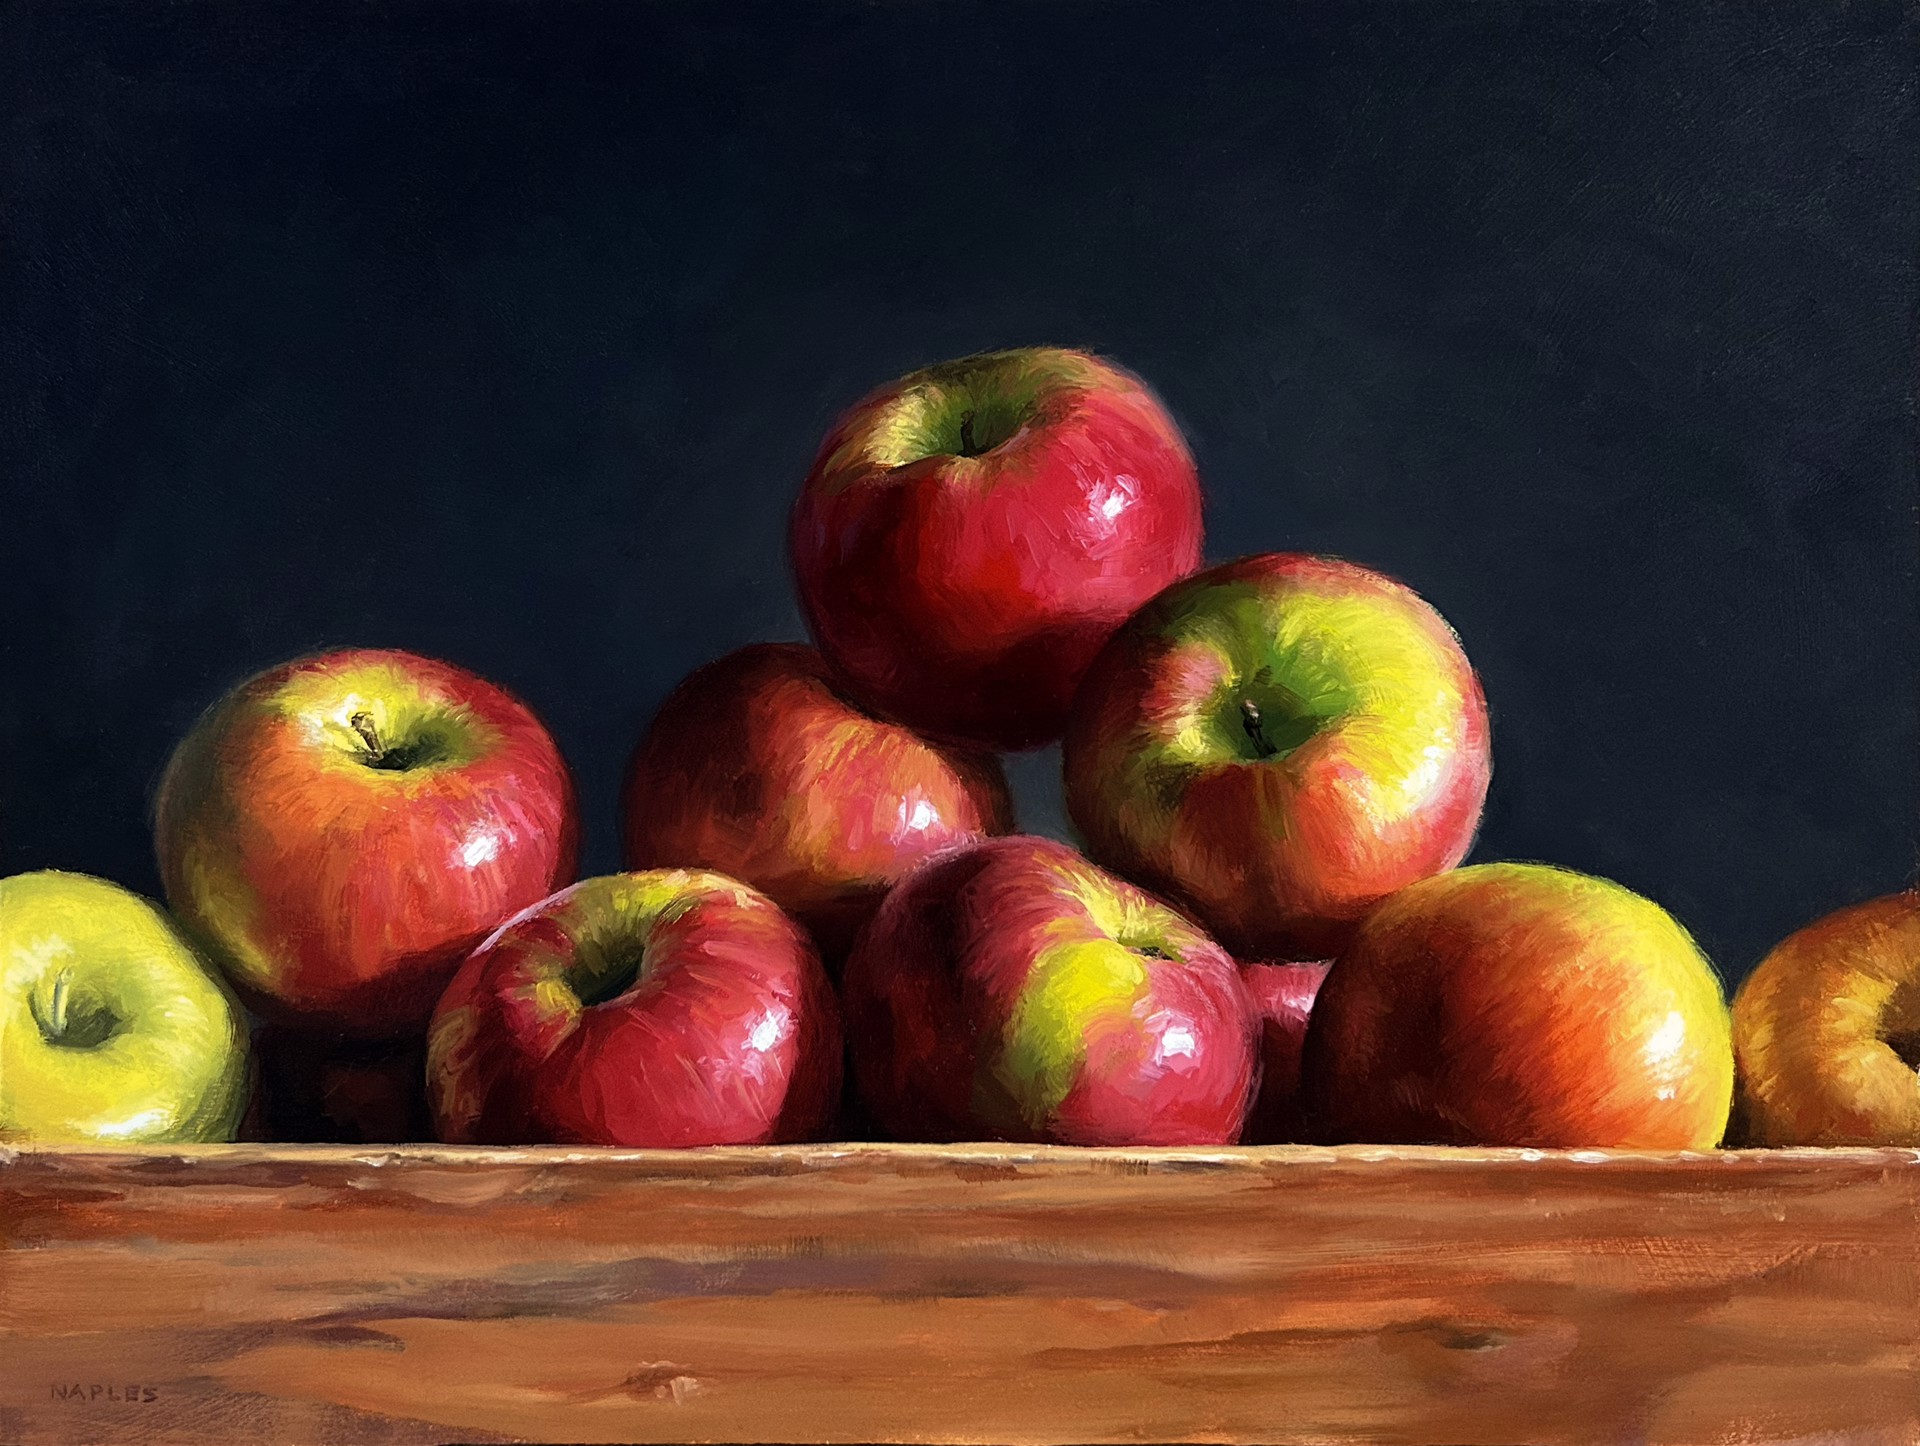 Ascending Apples by Michael Naples